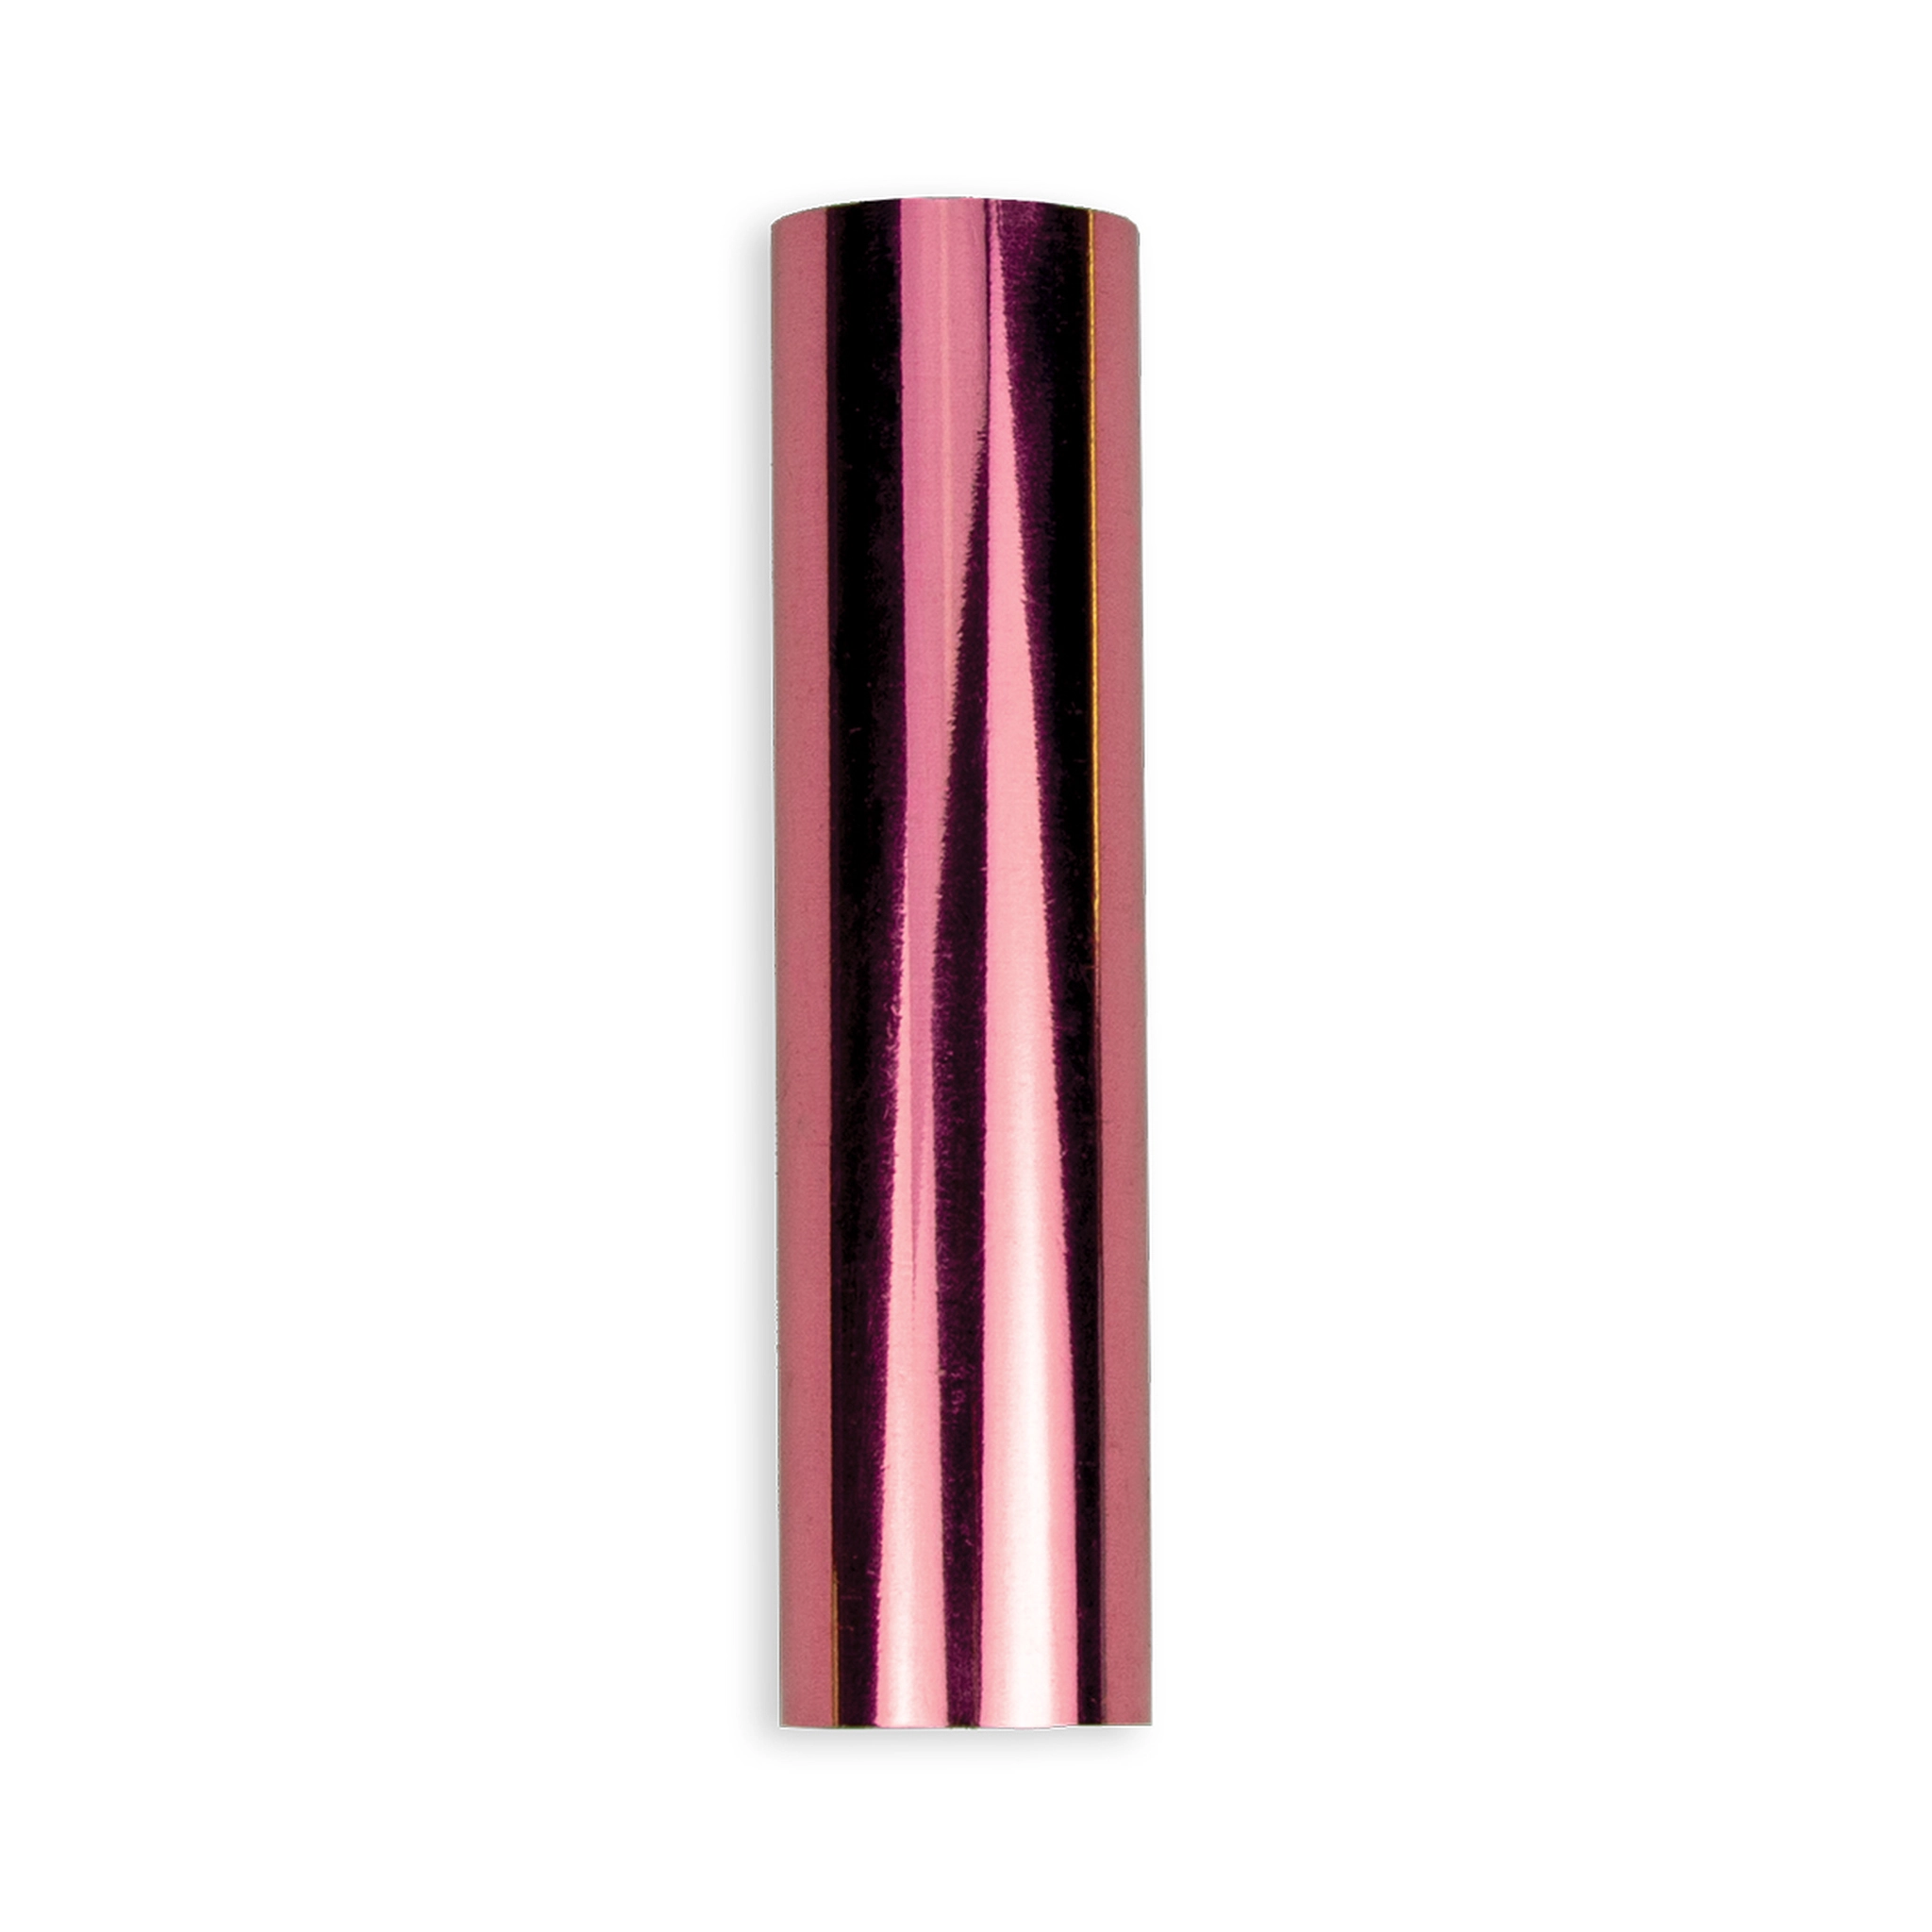 Spellbinders Glimmer Hot Foil Roll - Pink - Folie